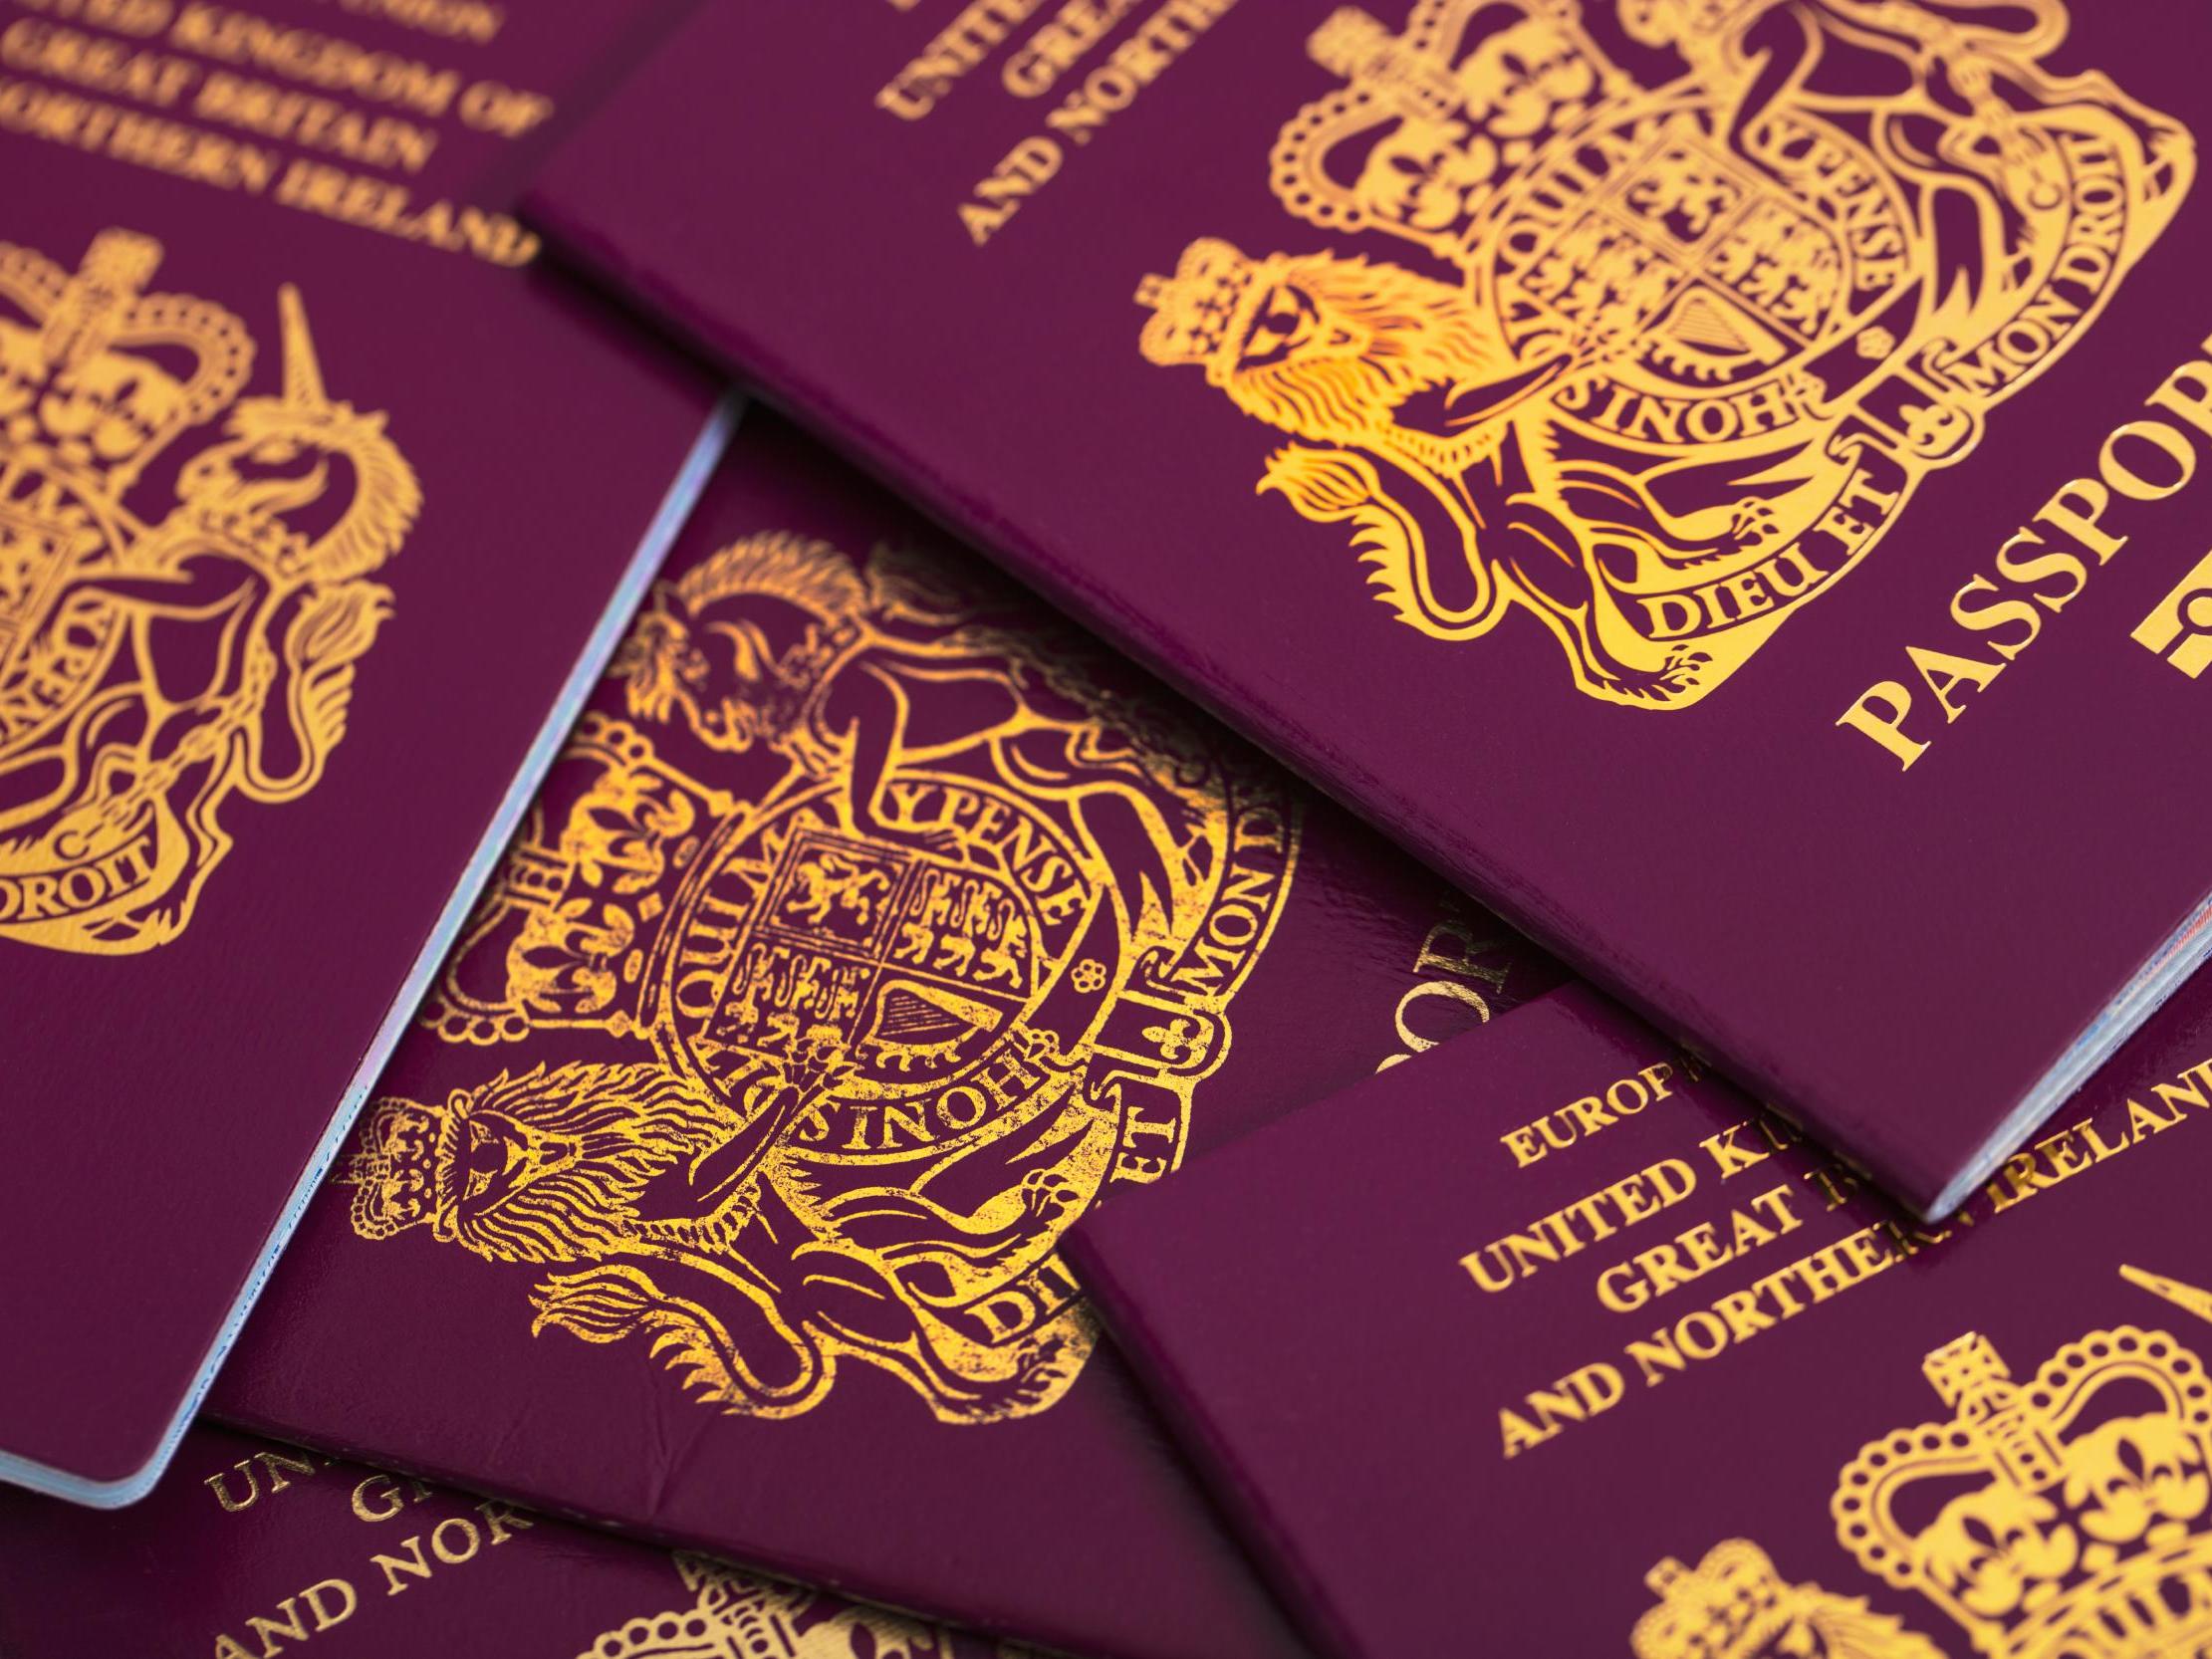 The last burgundy British passport will expire in 2029